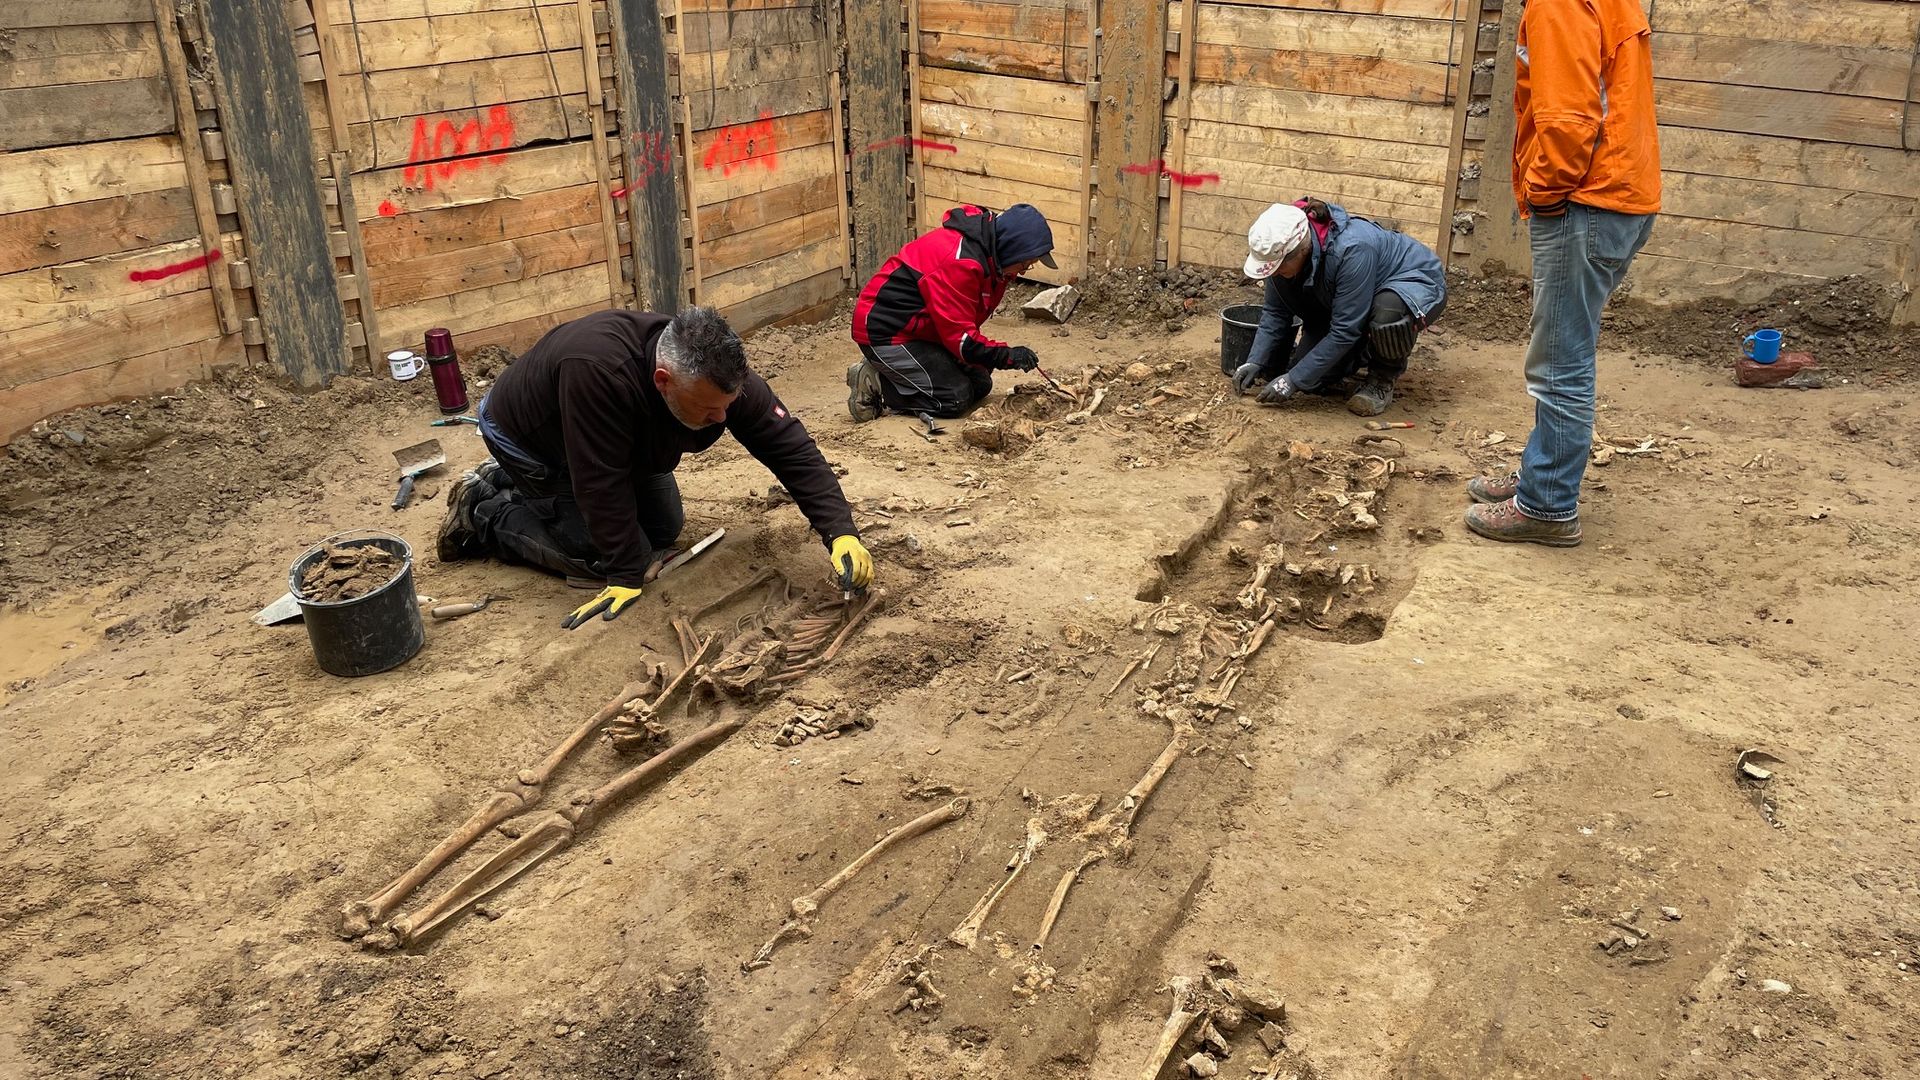 düsseldorf: archäologen entdecken 30 gräber unter baustelle